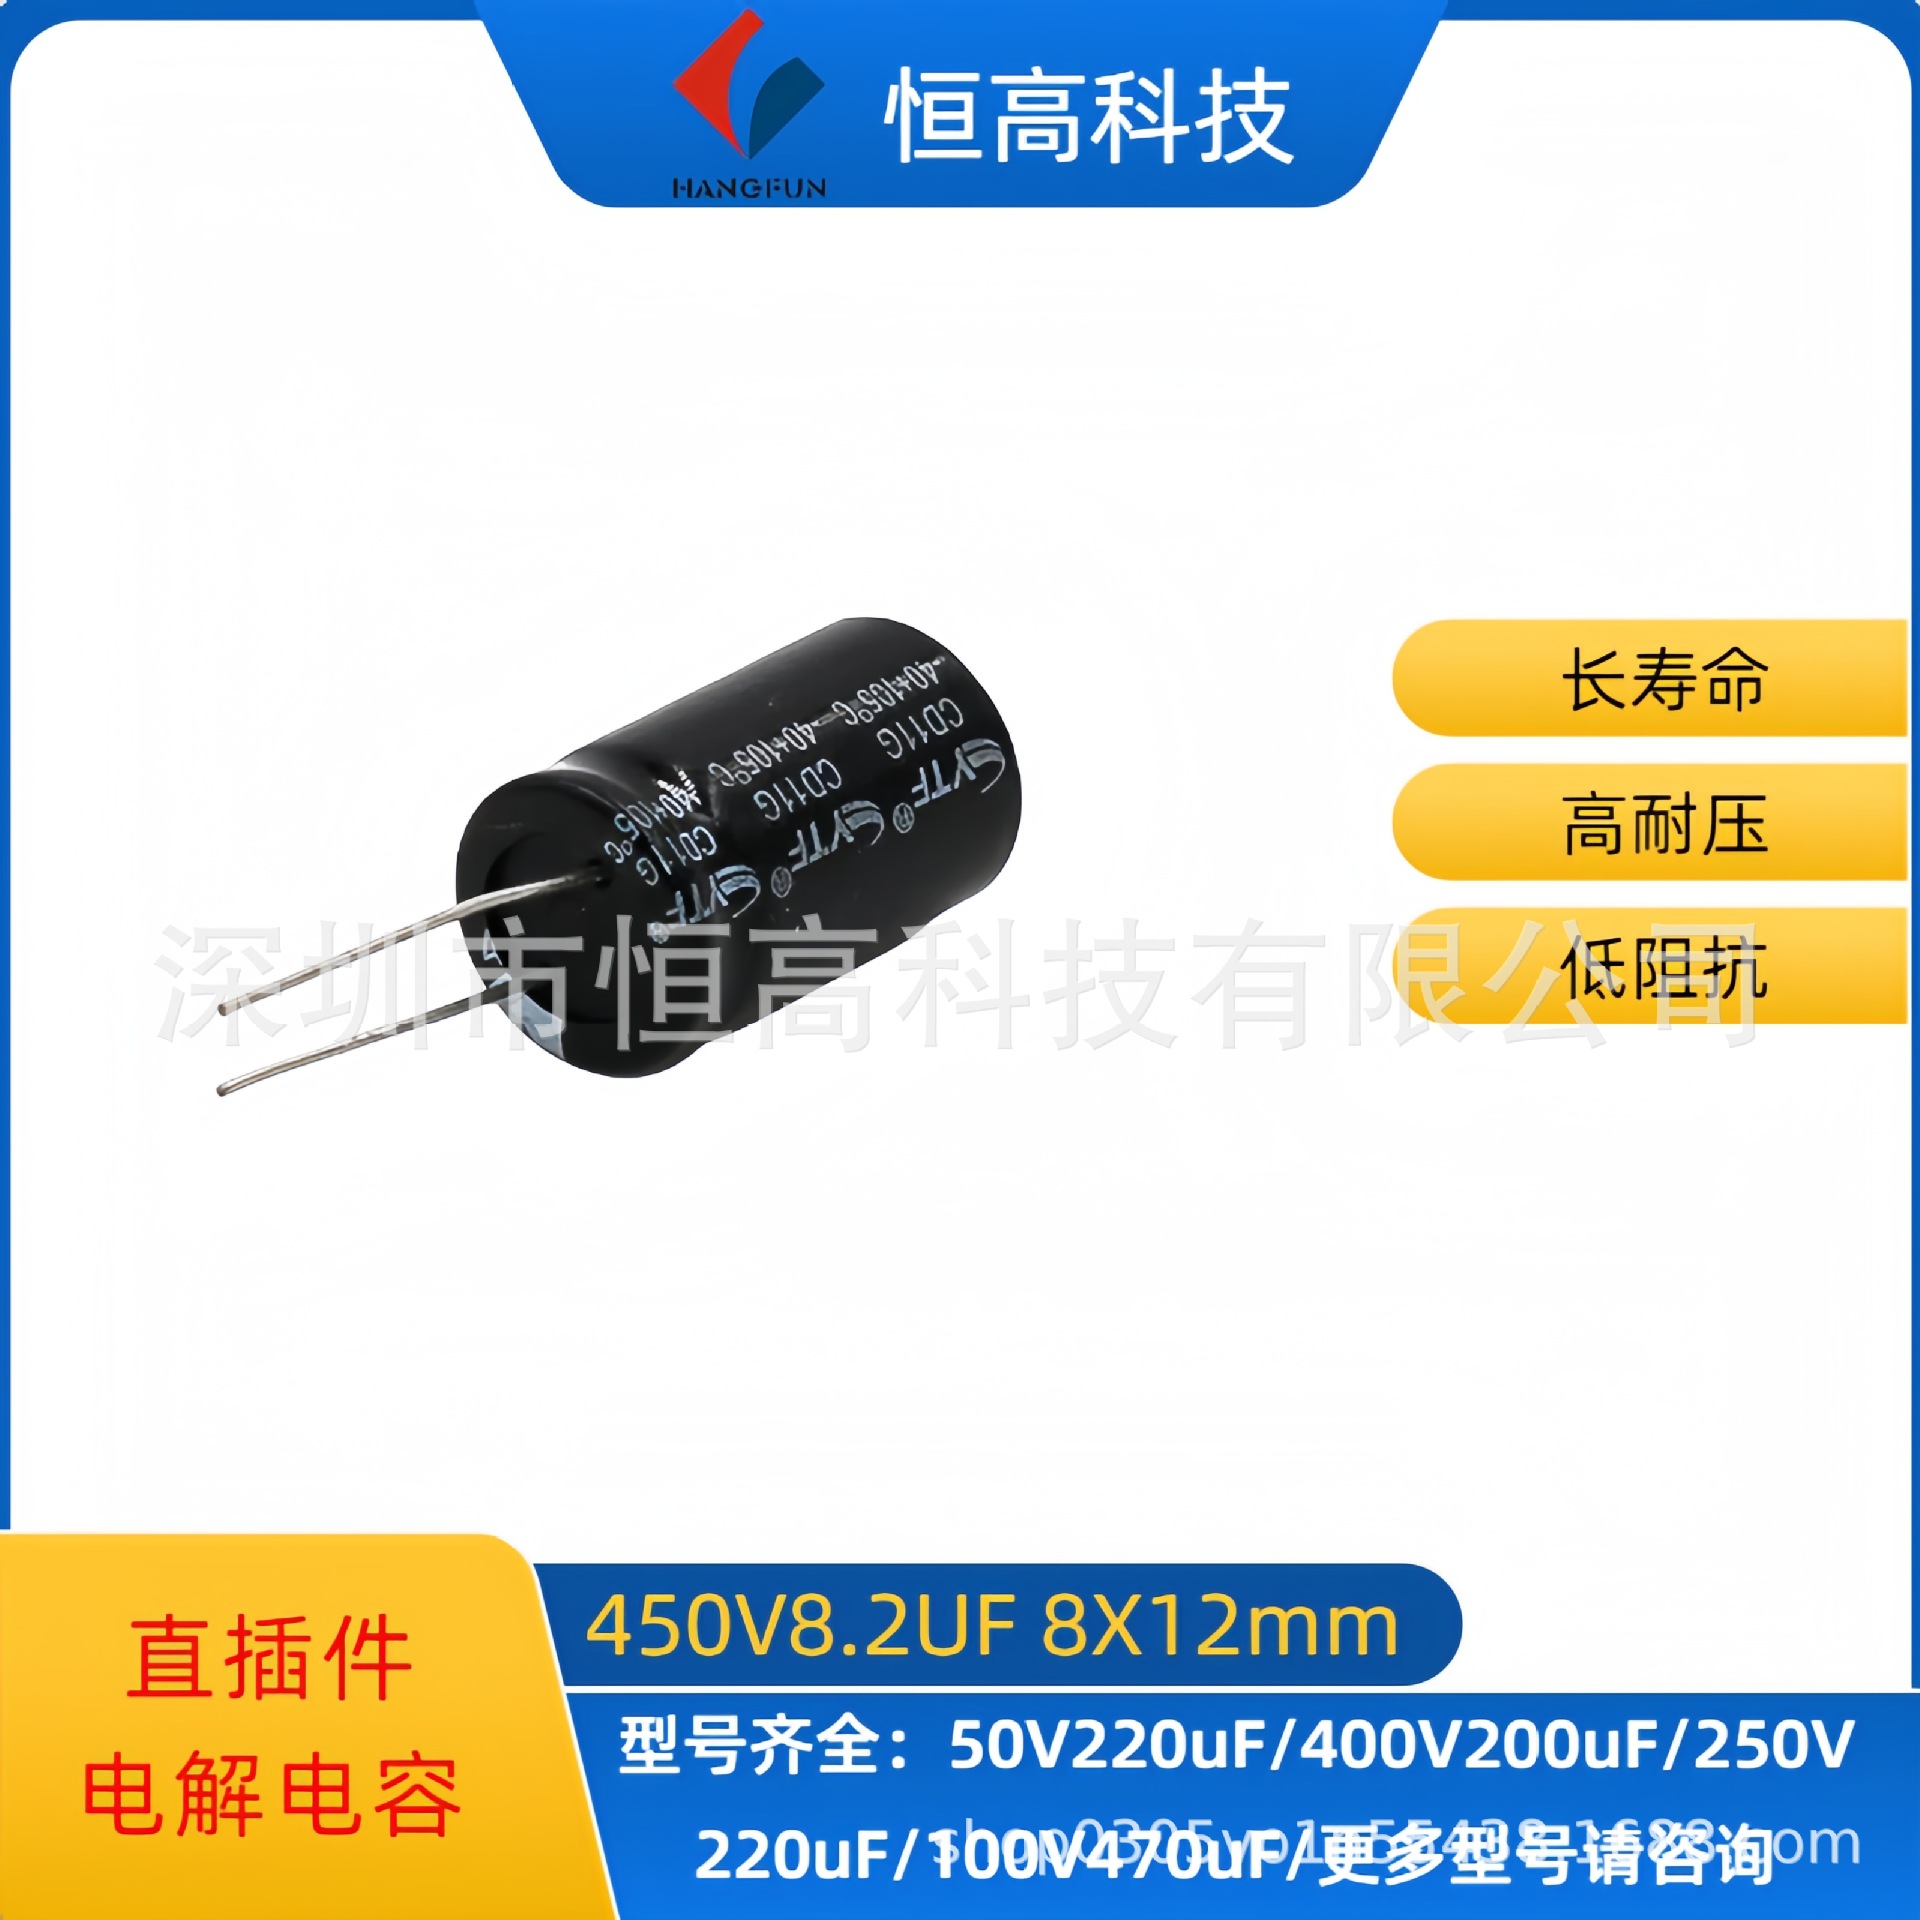 直插件铝电解电容器 450V8.2uF 8X12mm 长寿耐压 高频低阻铝电容